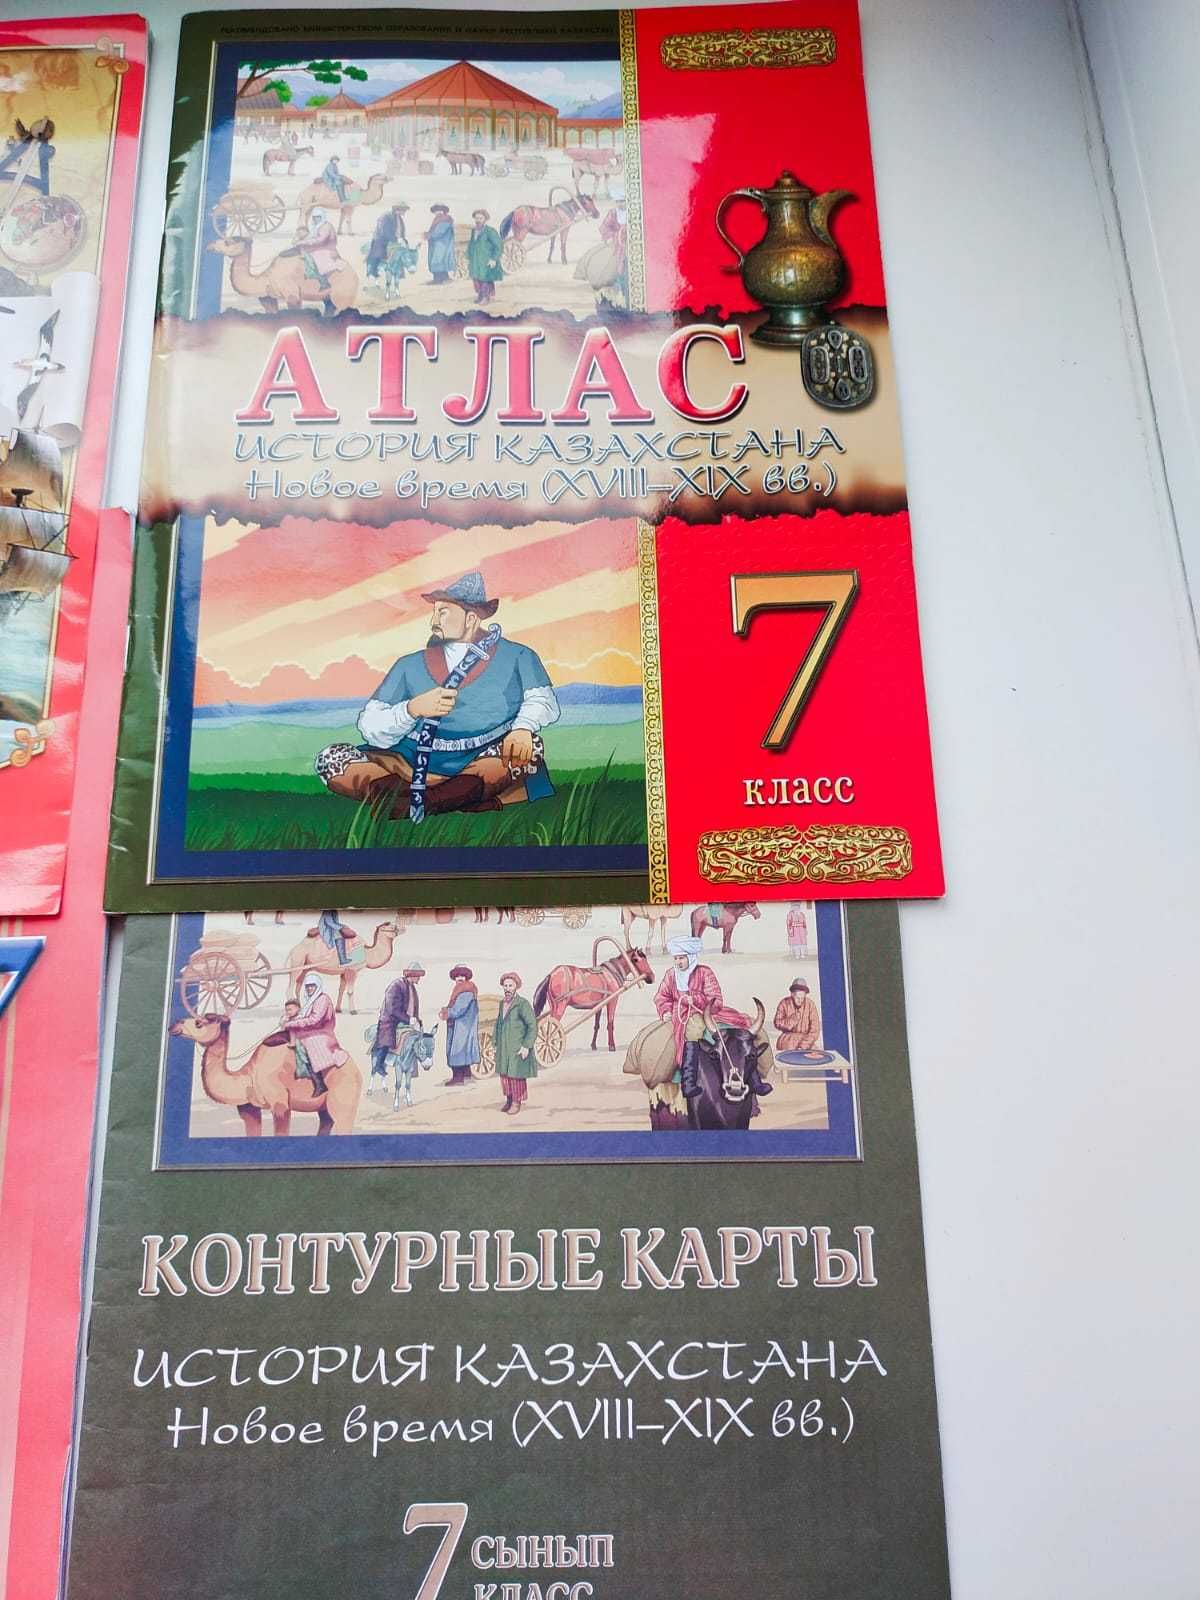 Атласы для 7 класса по географии и истории Казахстана